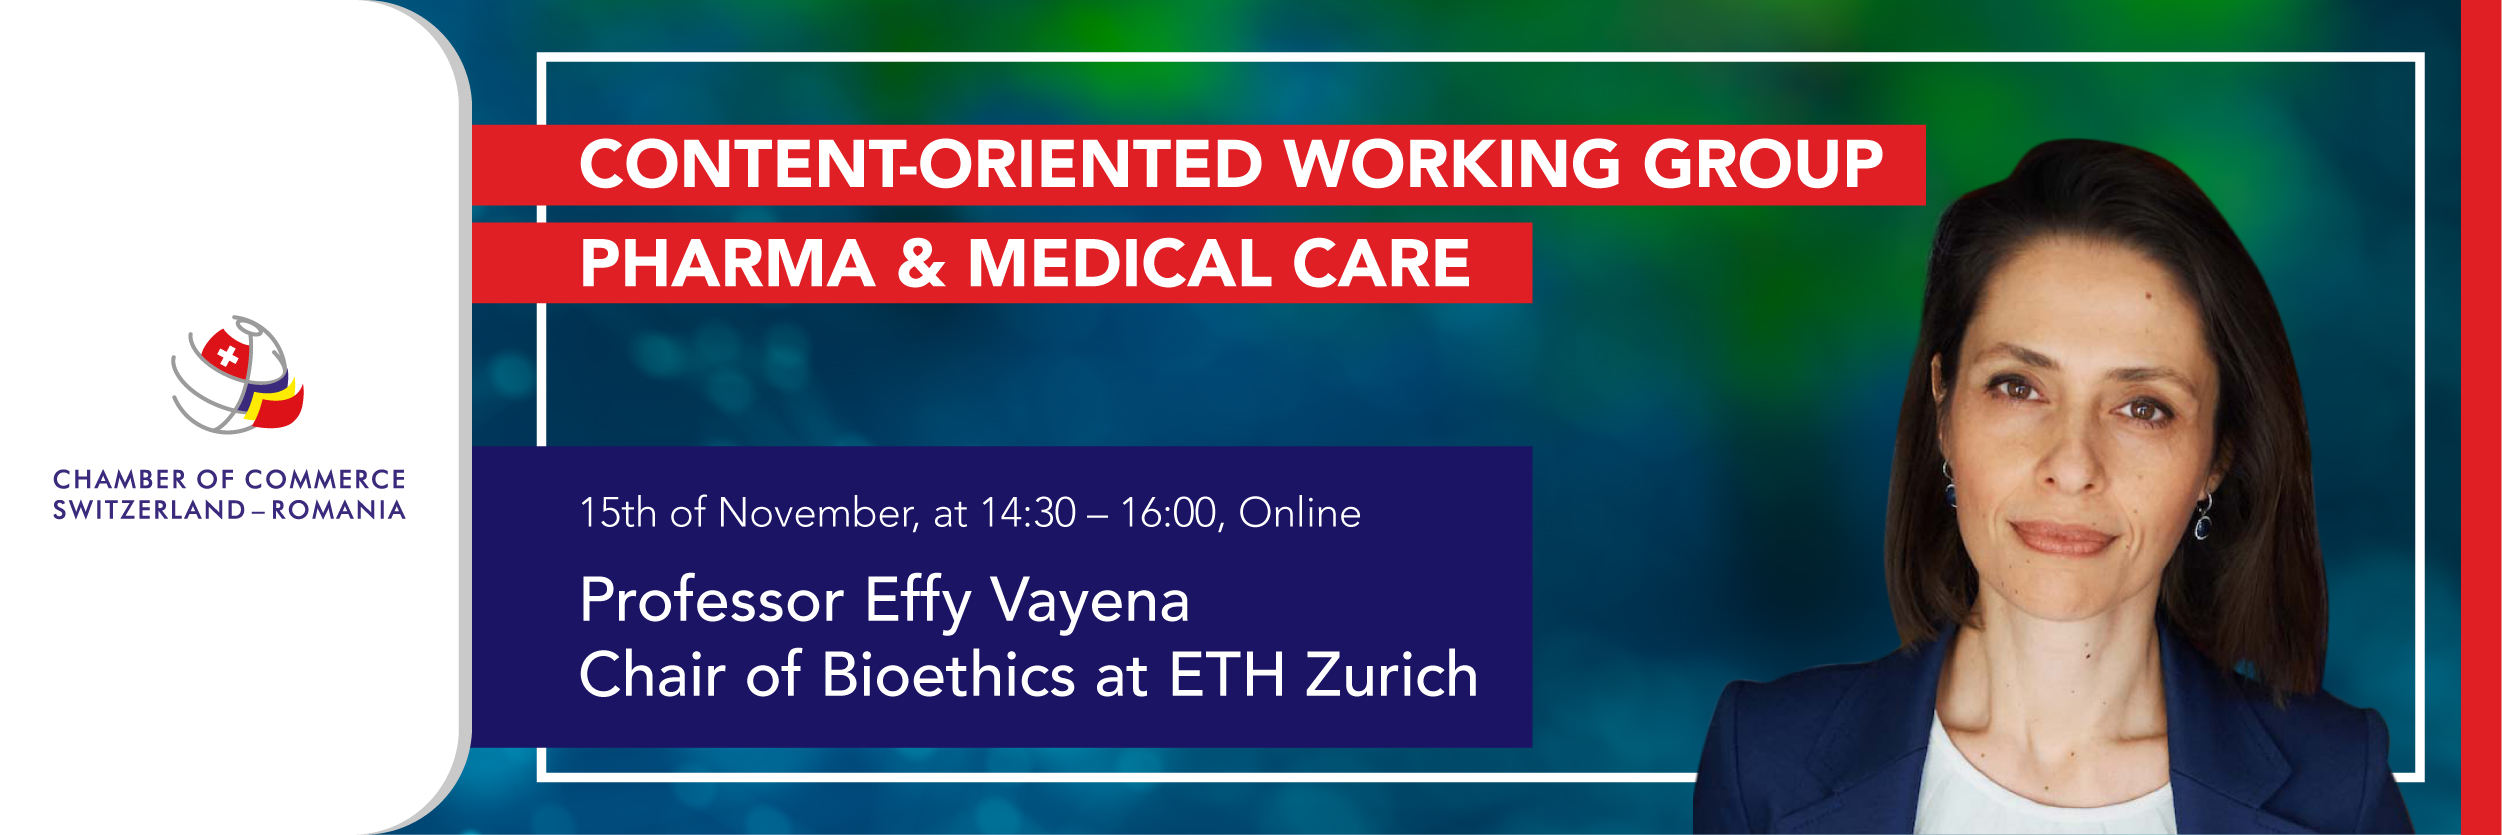 Bioetics with prof. Effy Vayena, ETH Zurich